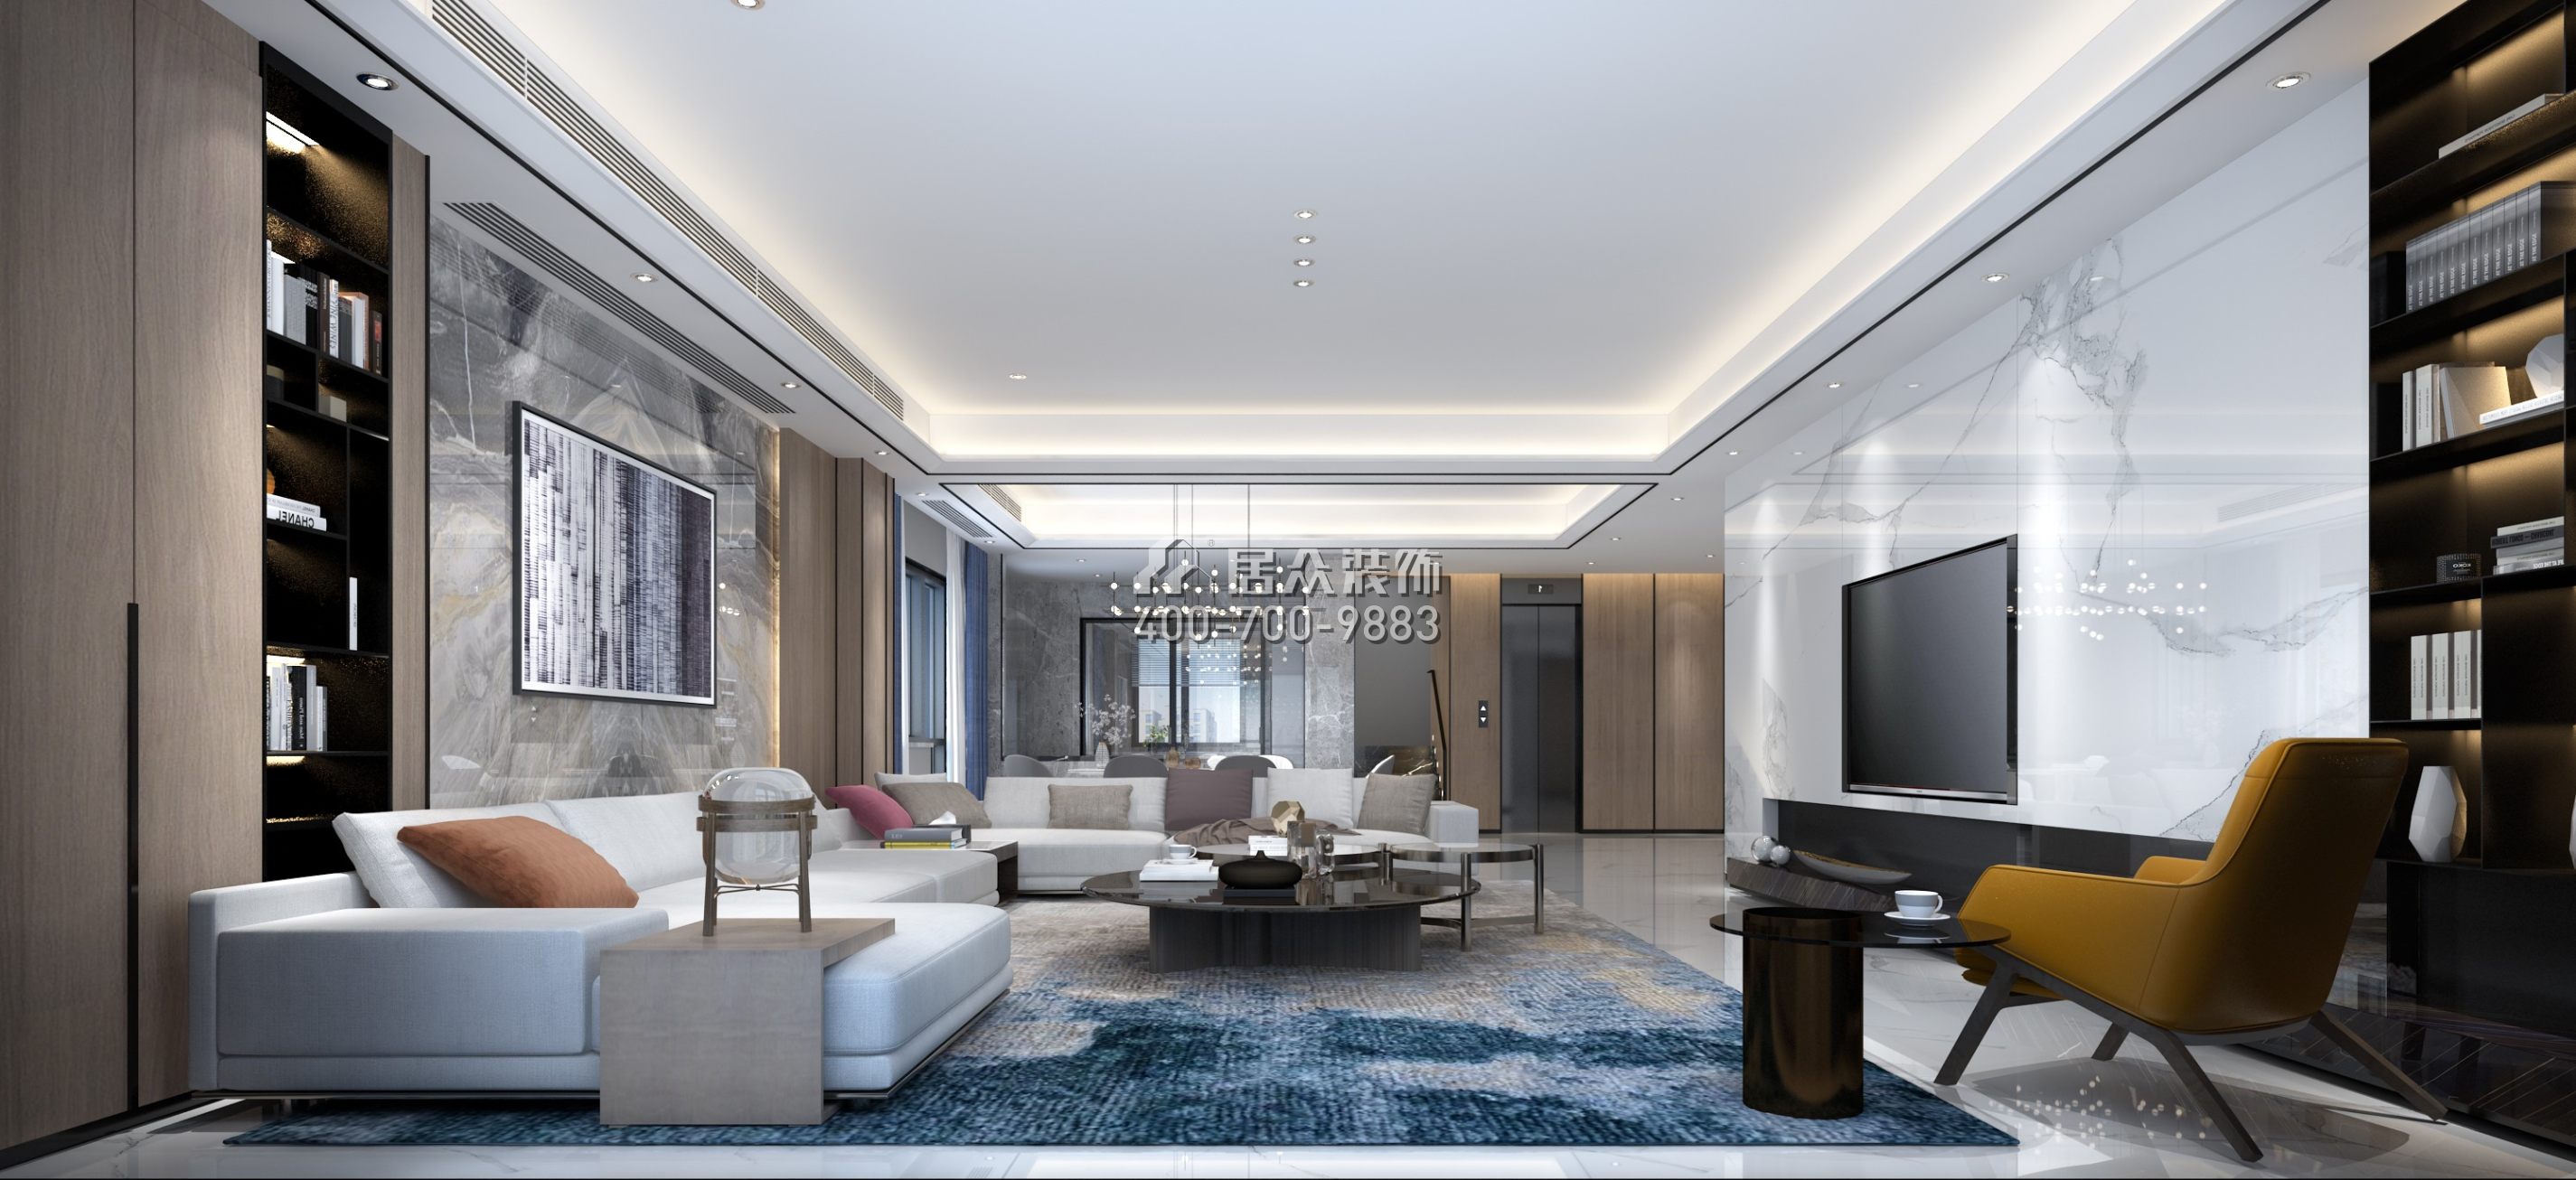 青龙湾布拉庄园350平方米现代简约风格别墅户型客厅装修效果图